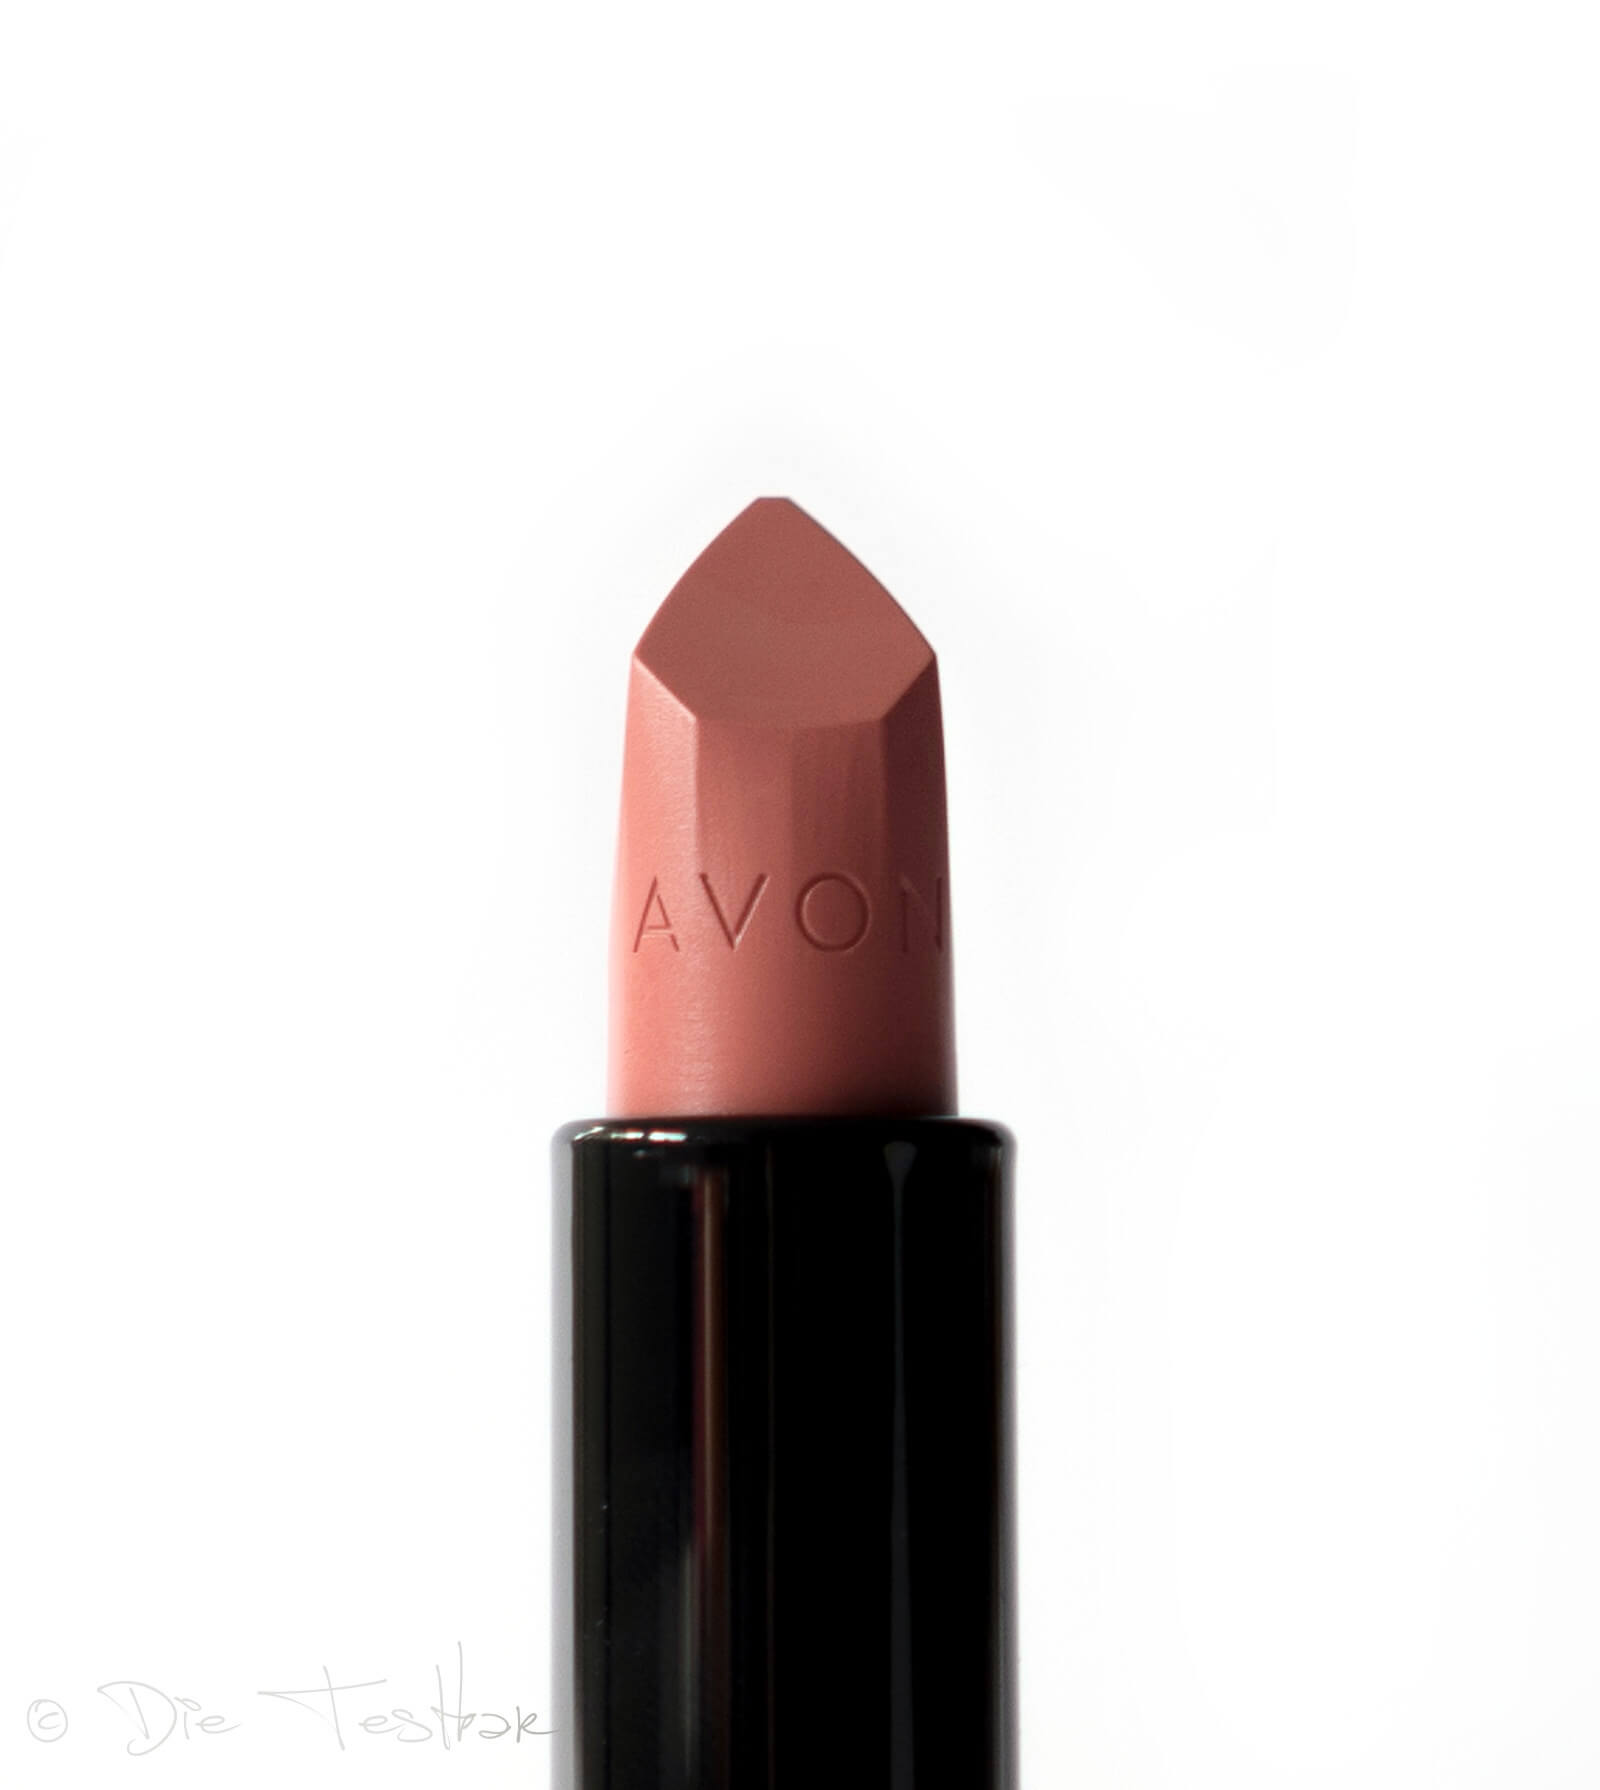 Kosmetik in wunderschönen Herbstfarben - Make-up von Avon für einen tollen Herbstlook 51